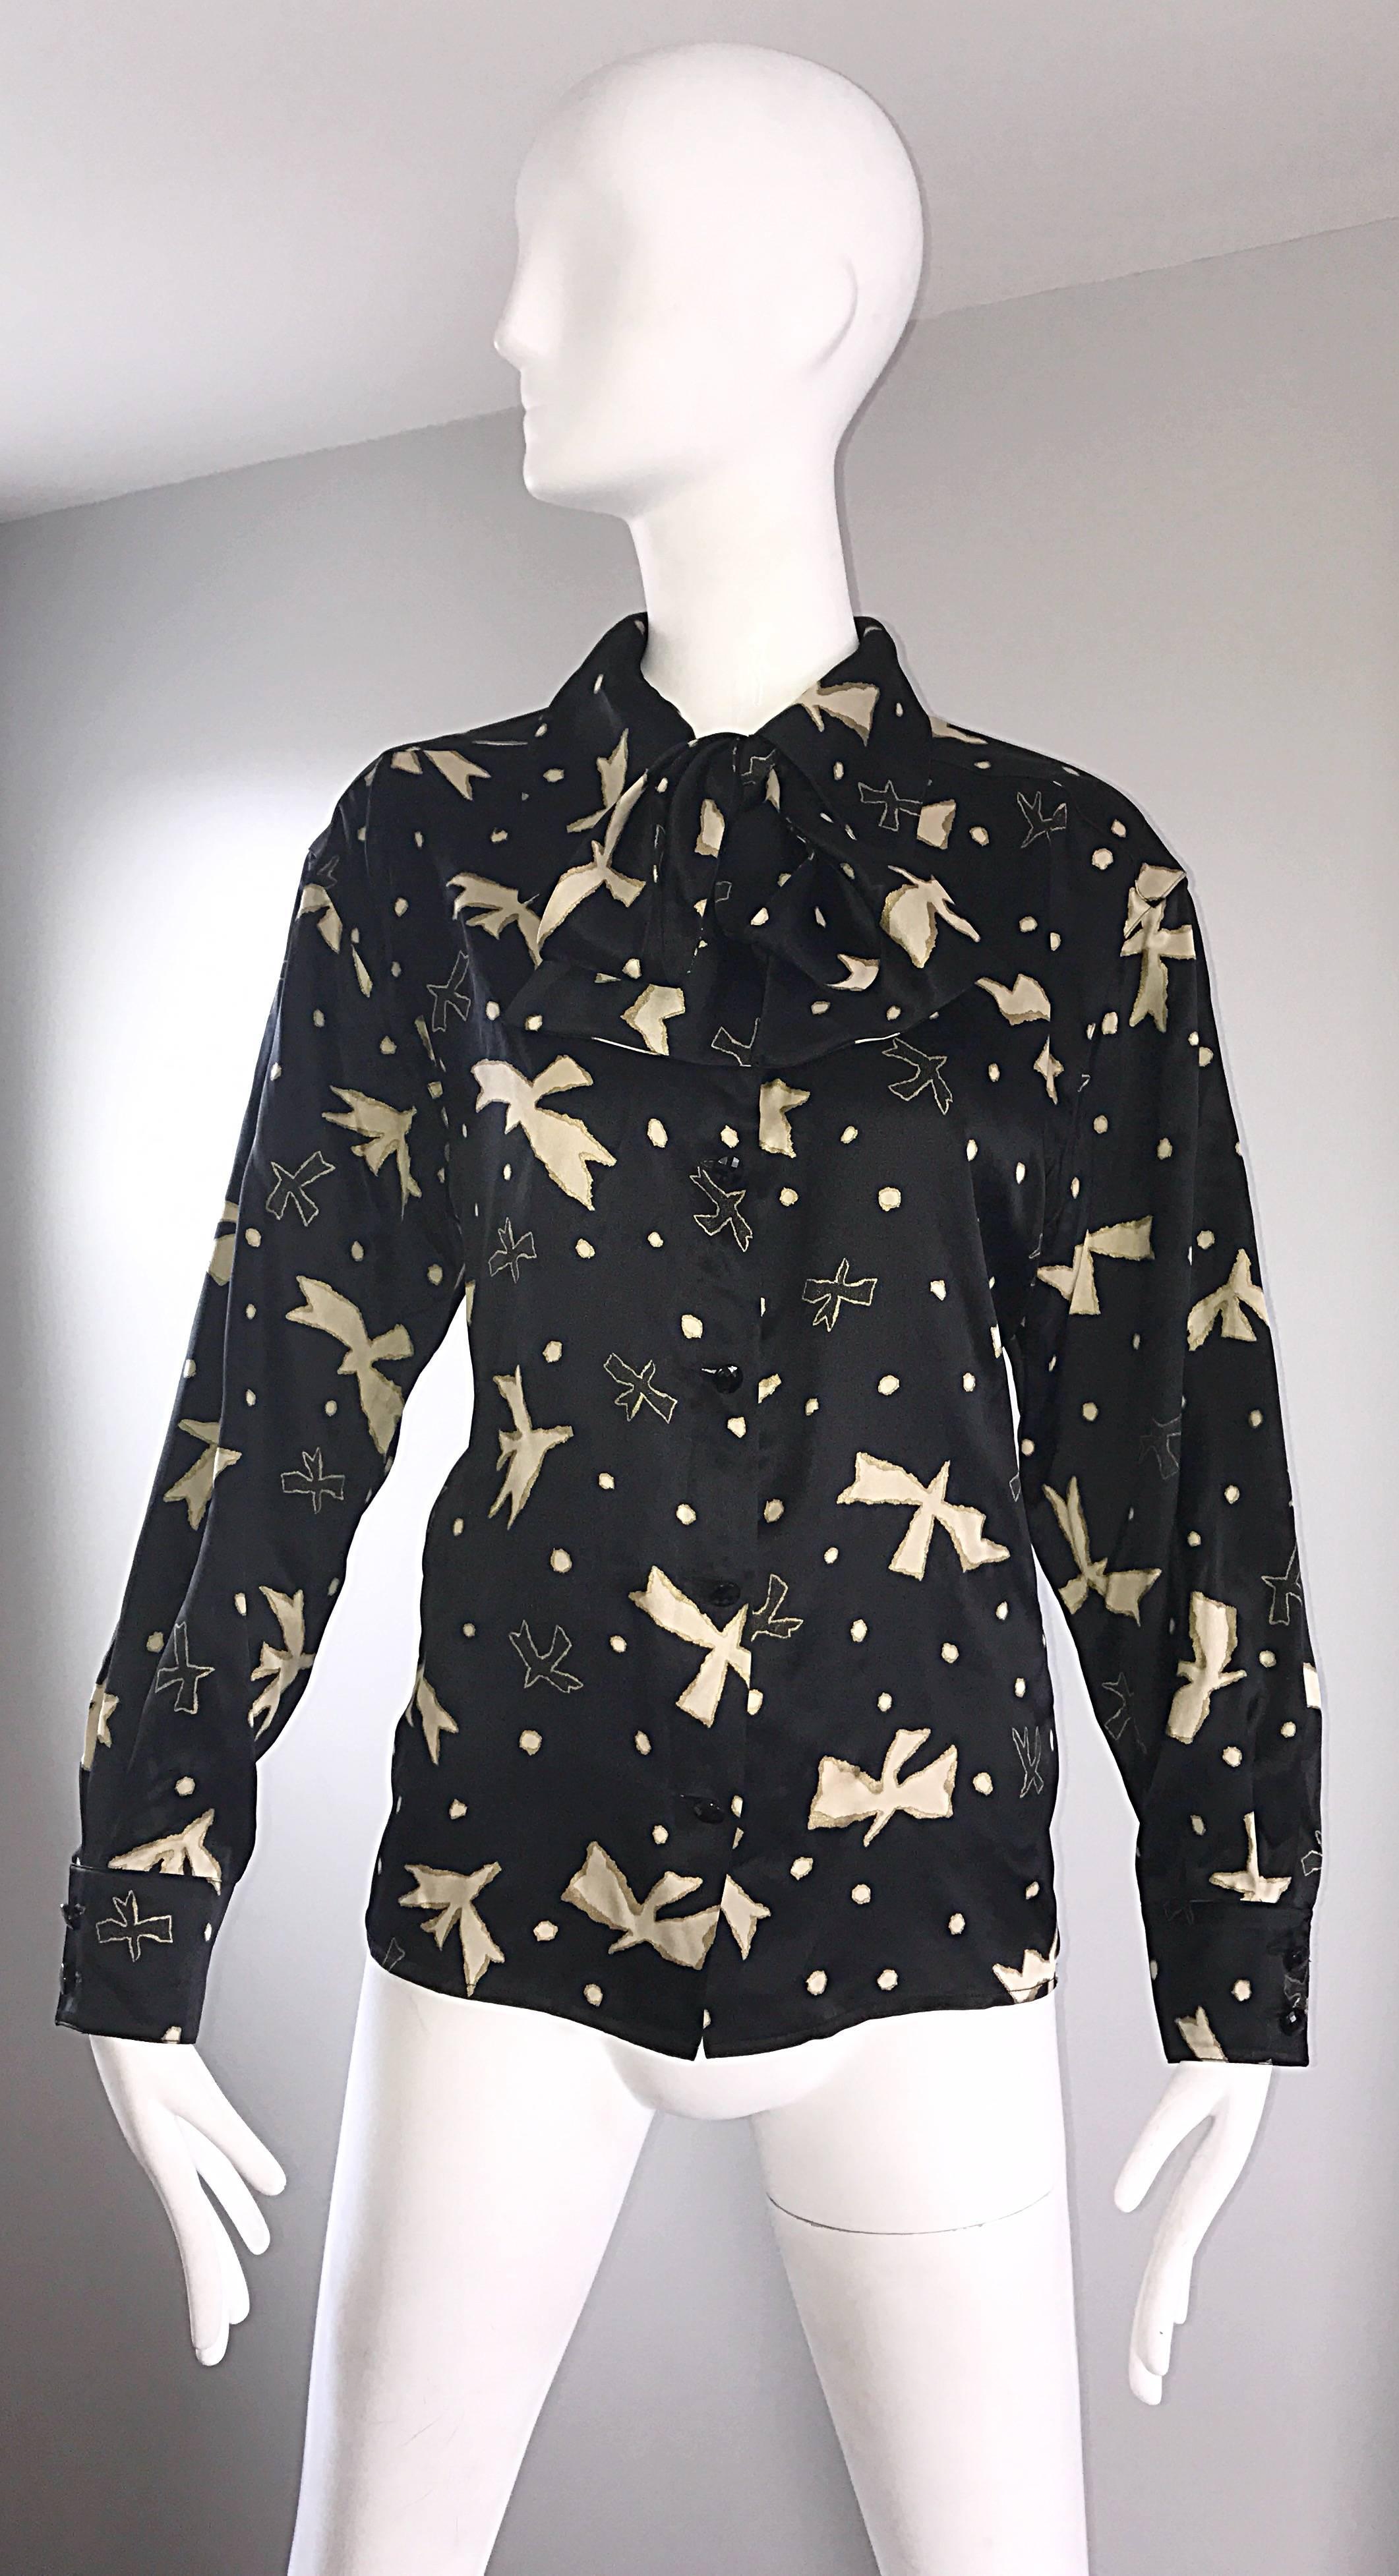 Schicke Vintage 90er EMANUEL UNGARO schwarz und elfenbein / weiß handbemalt  neuartiges Vogeldruck-Kätzchen-Schleifen-Top! Mit großen weißen Vögeln, die mit Goldmetallic umrandet sind, und kleinen schwarzen Vögeln, die ebenfalls mit Goldmetallic